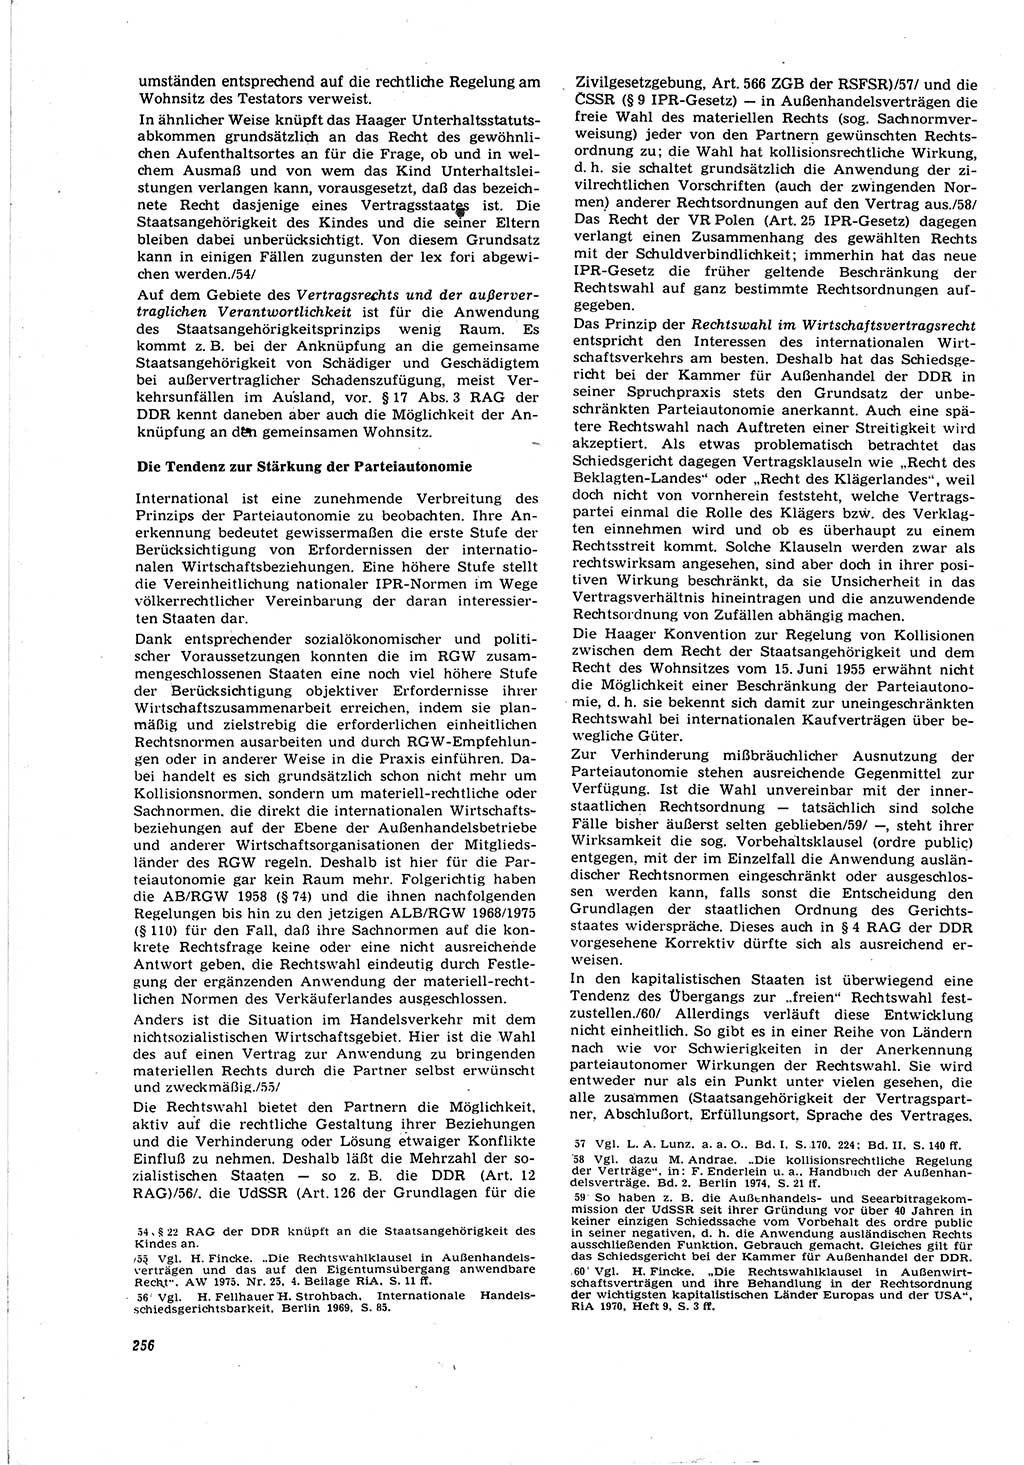 Neue Justiz (NJ), Zeitschrift für Recht und Rechtswissenschaft [Deutsche Demokratische Republik (DDR)], 30. Jahrgang 1976, Seite 256 (NJ DDR 1976, S. 256)